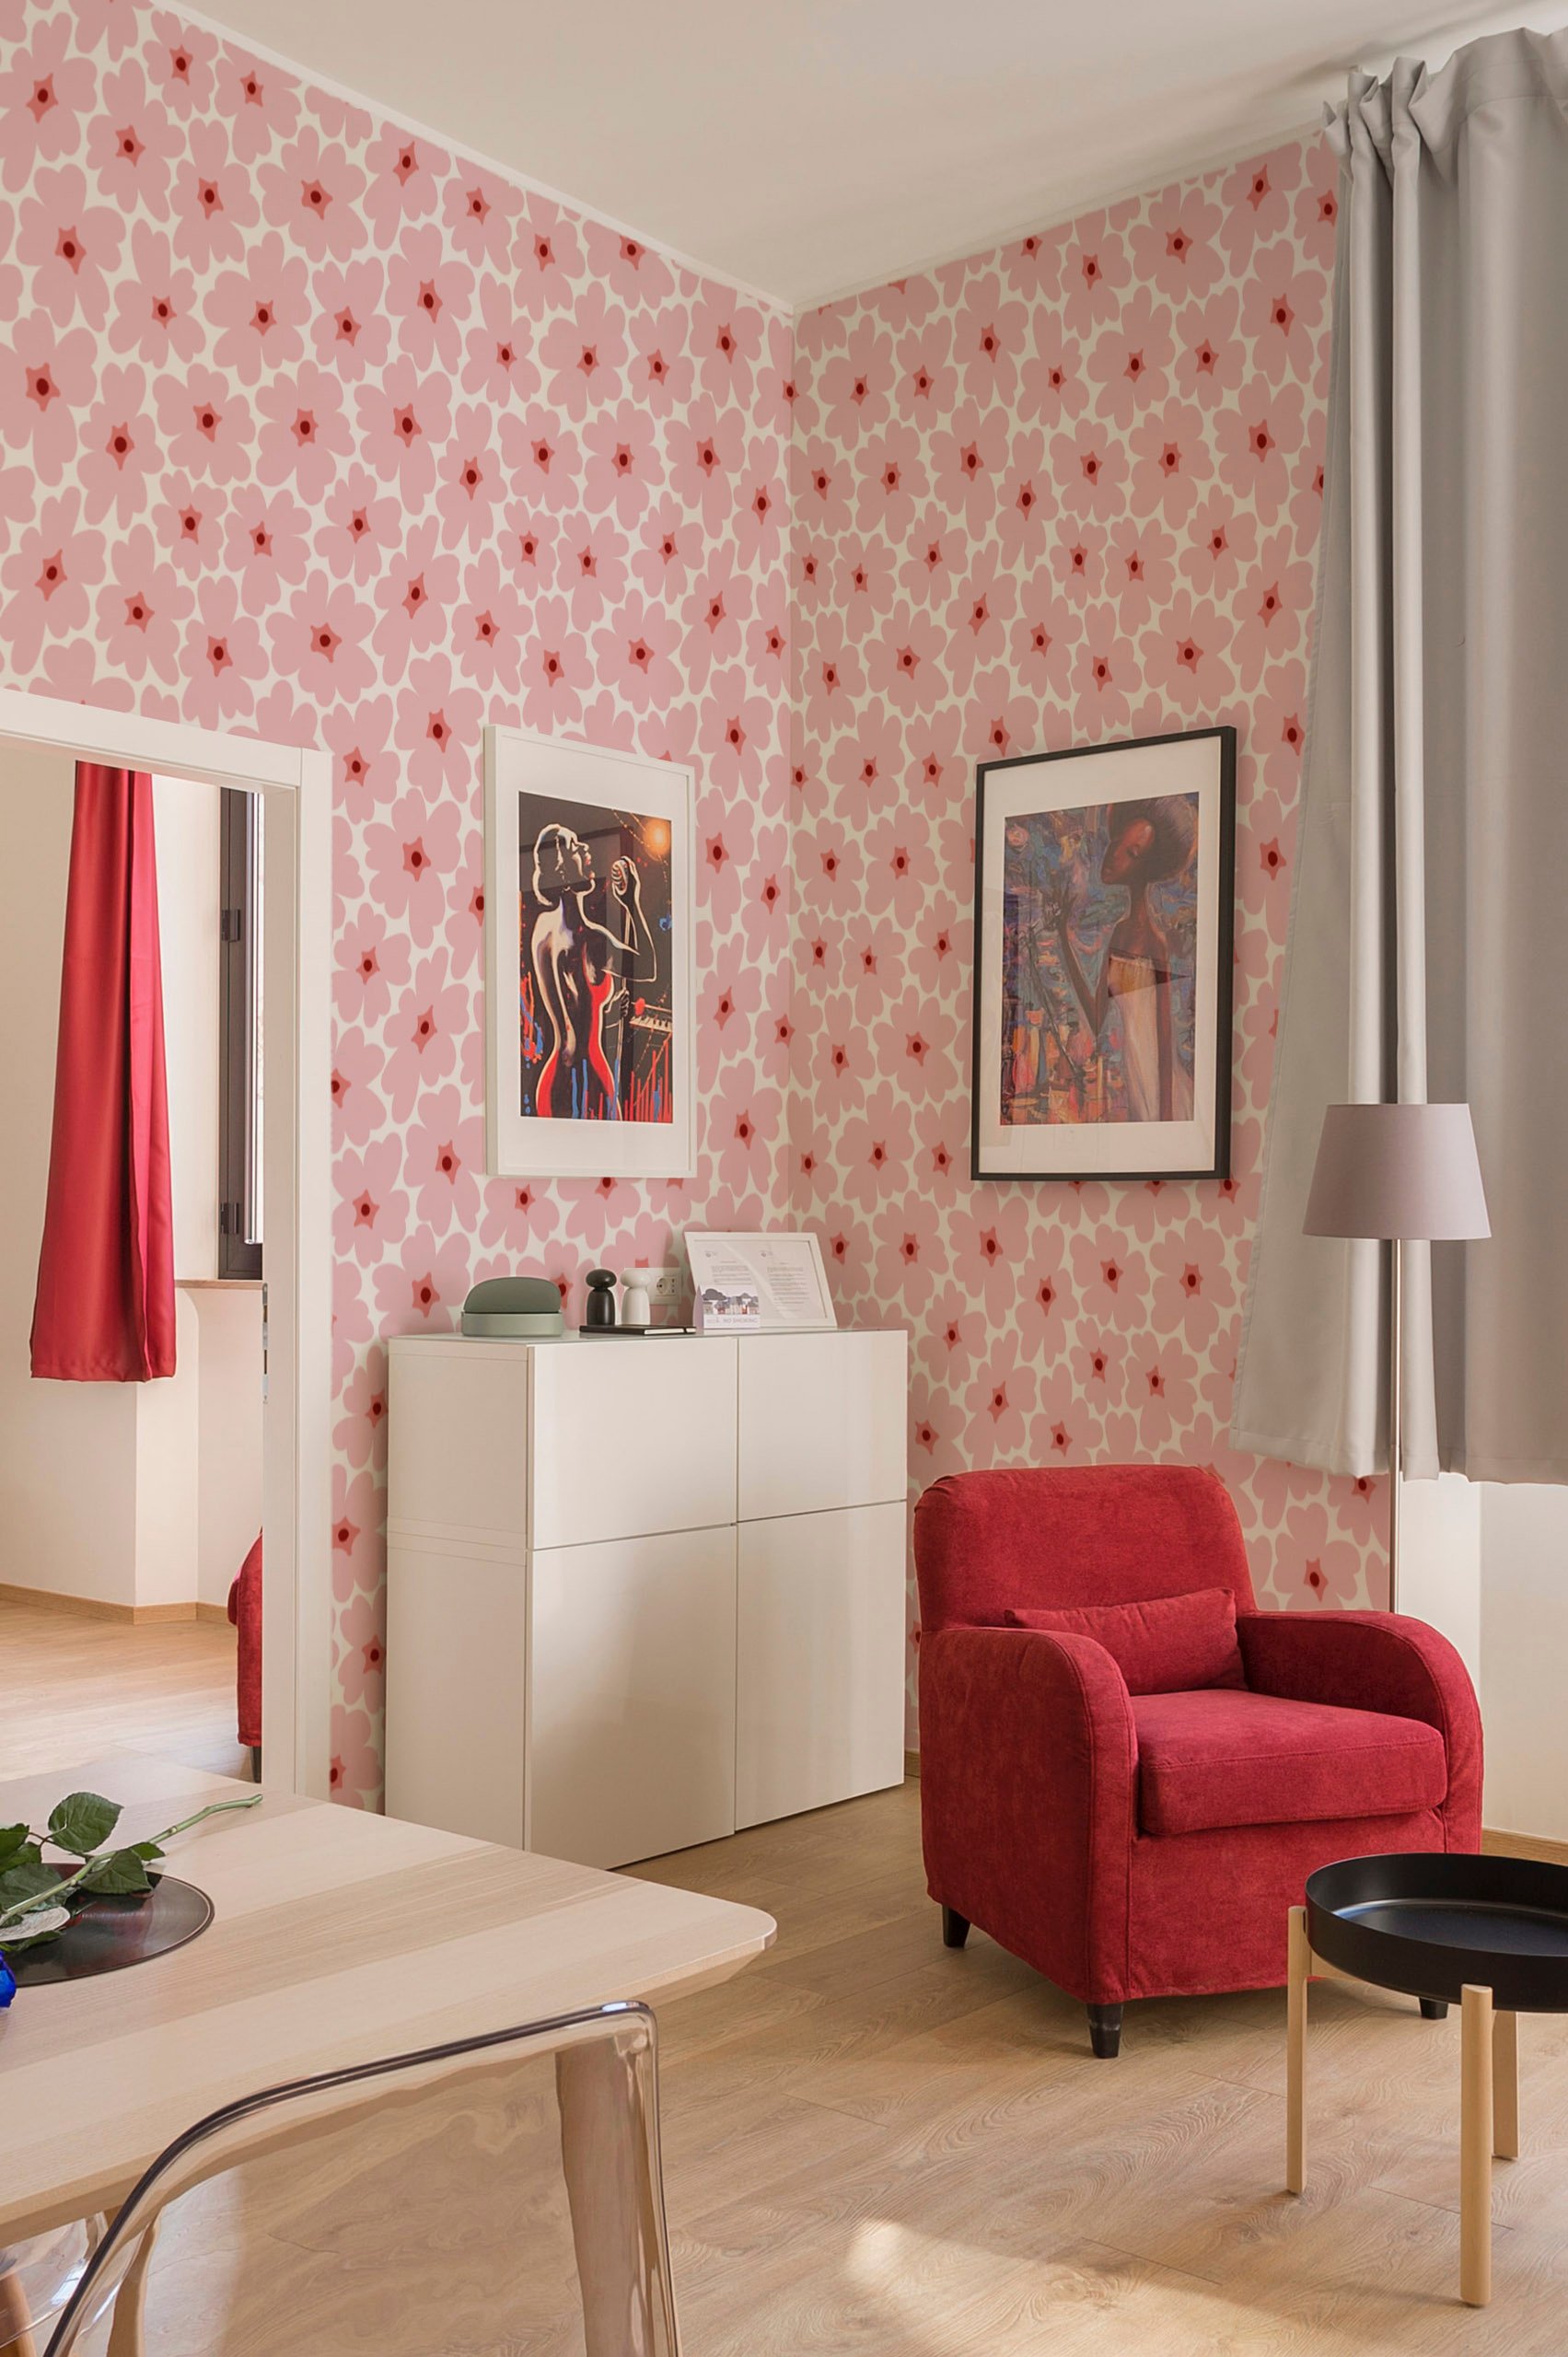 N302 papier peint fleurs vintage colorees rose fond blanc chambre fauteuil